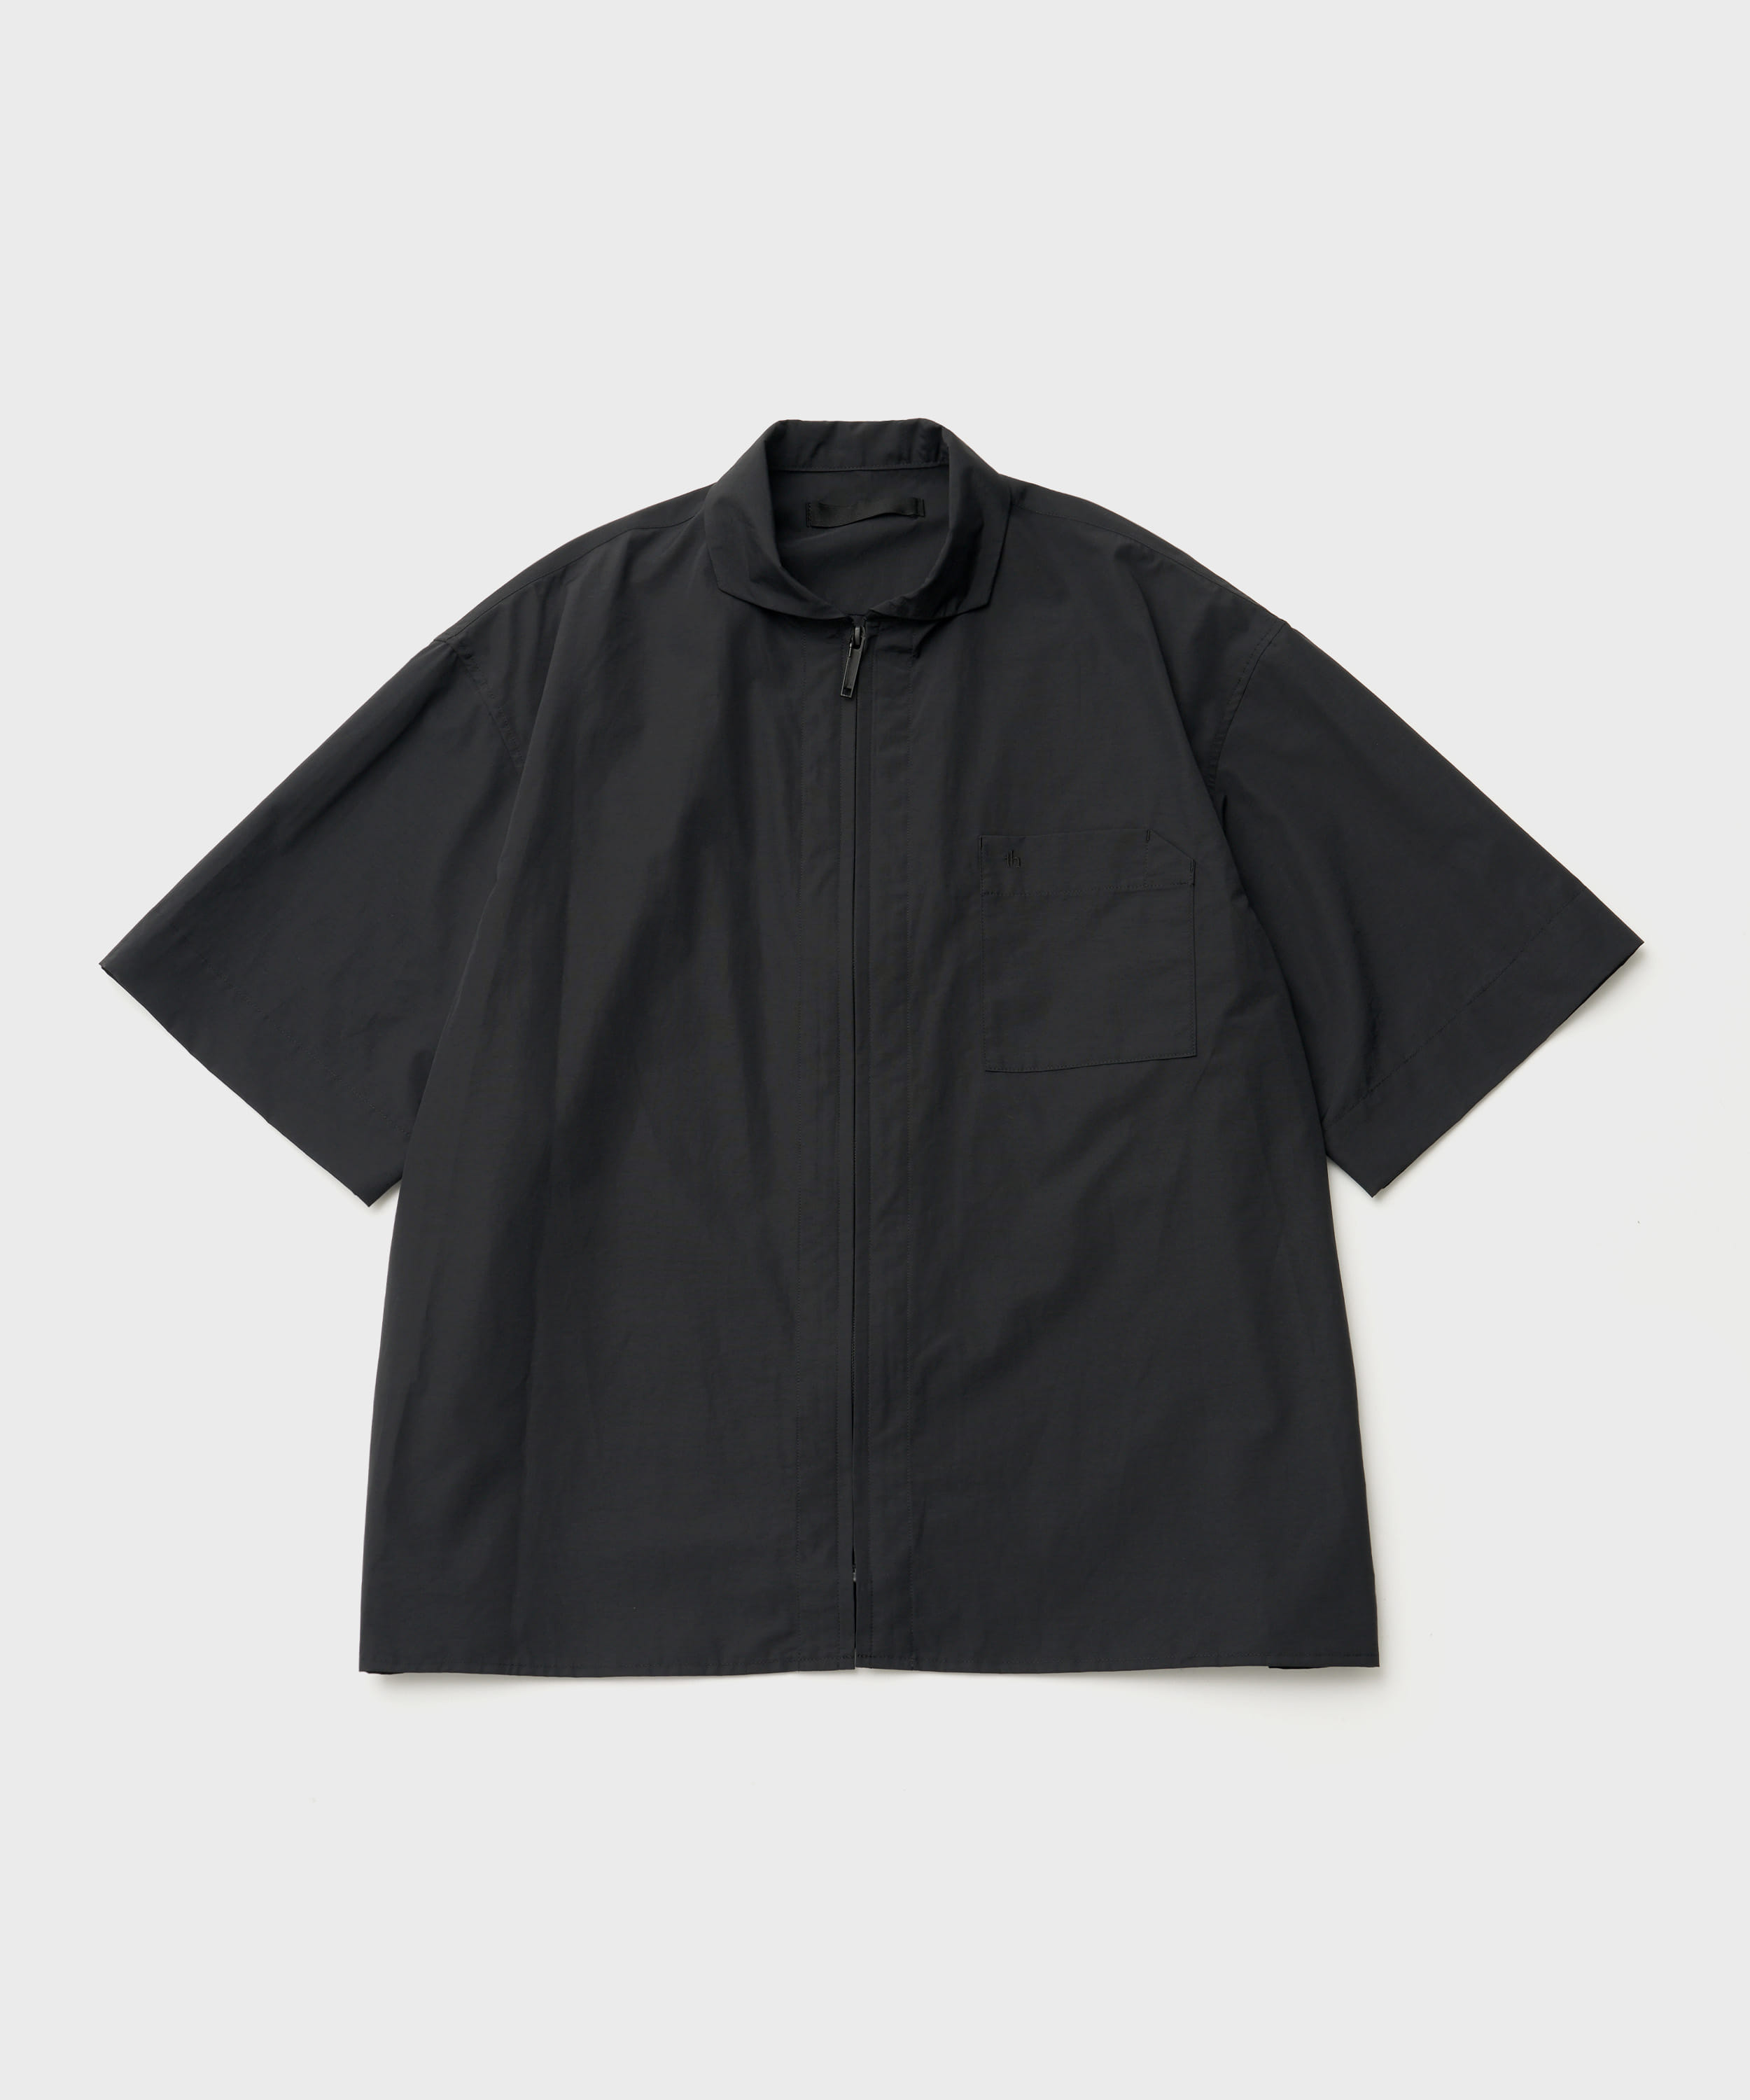 Midsize S/S Zip Shirt (Black)